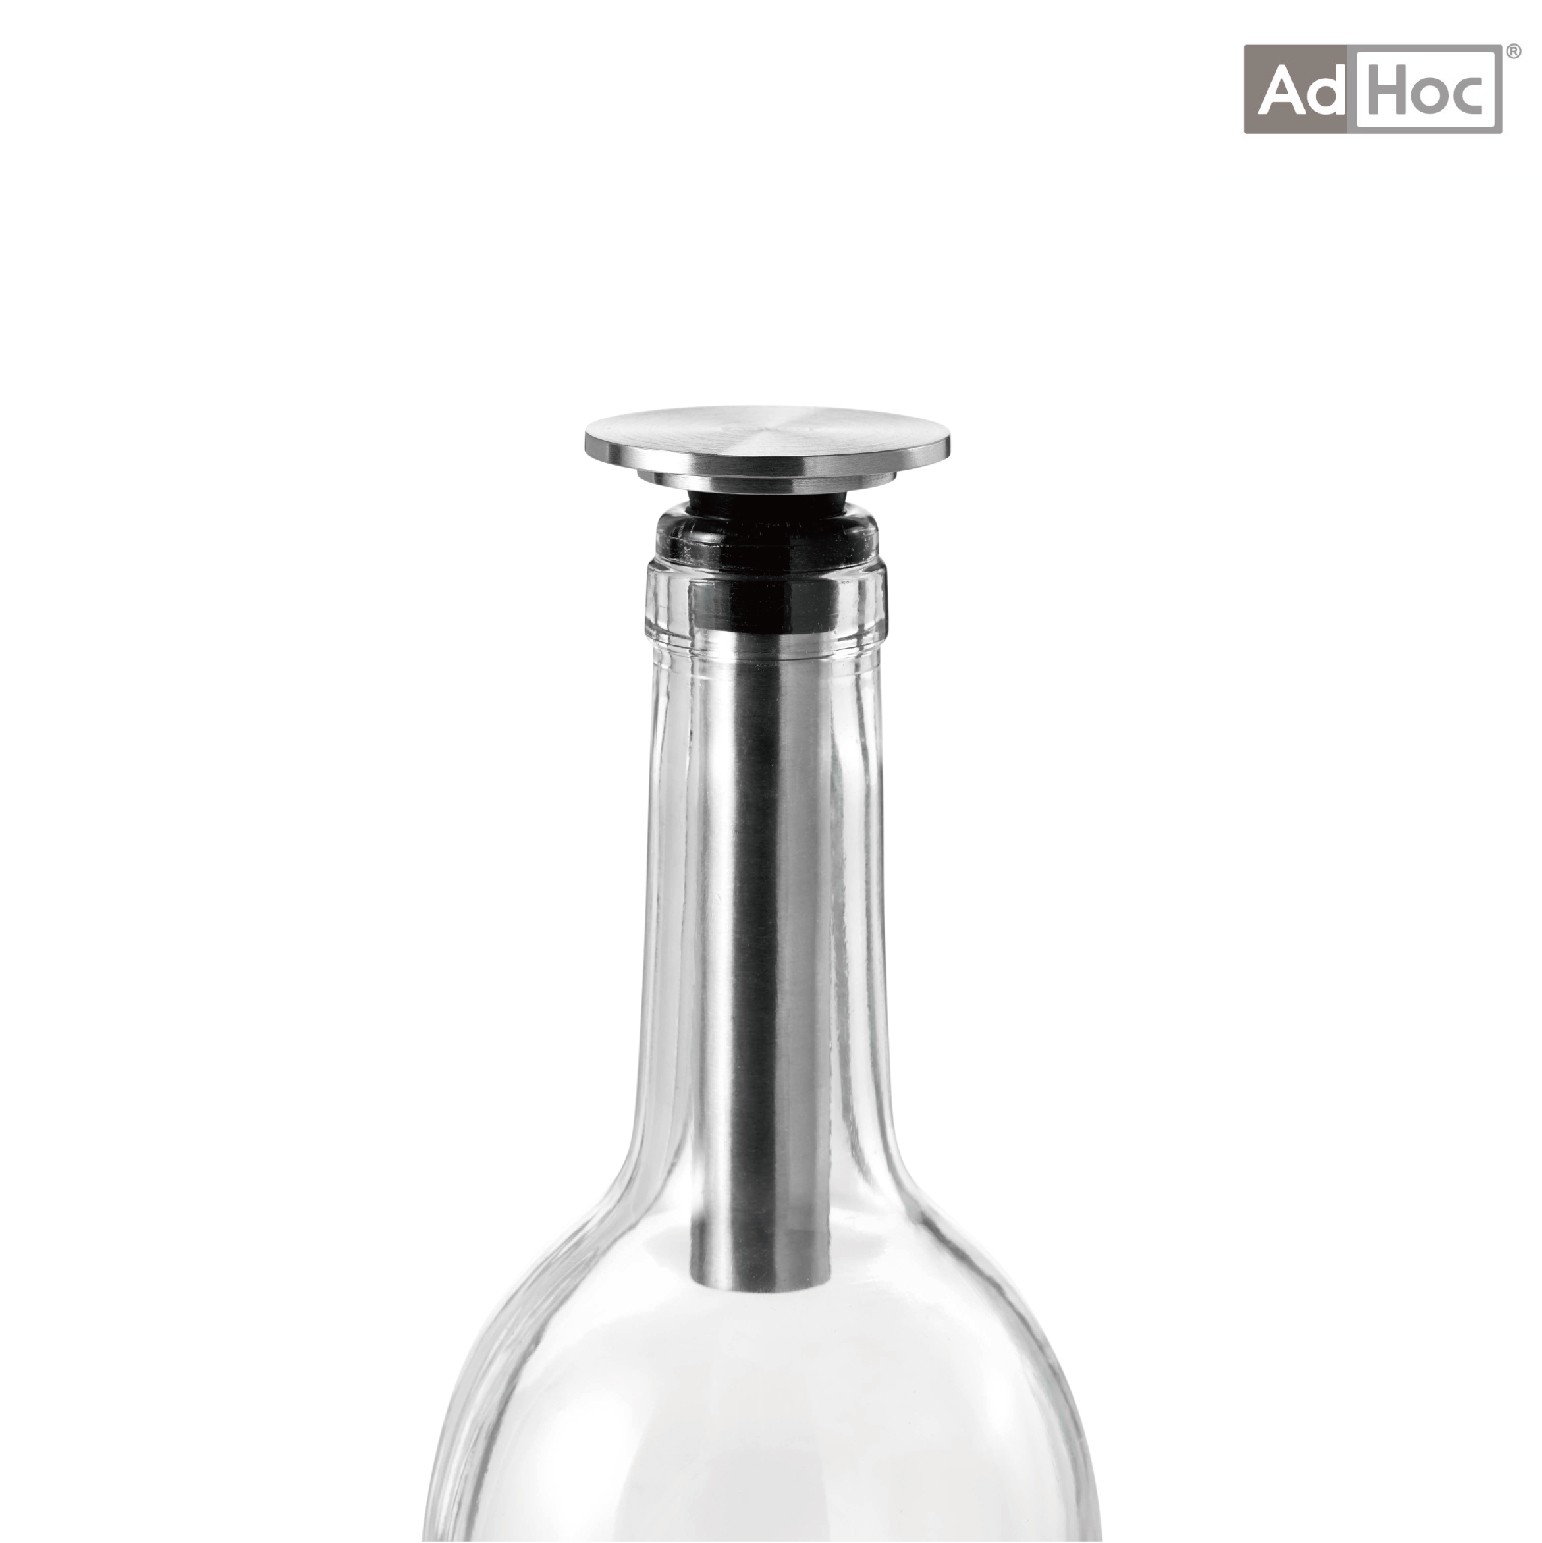 AdHoc 可抽空氣酒瓶塞(VP04)